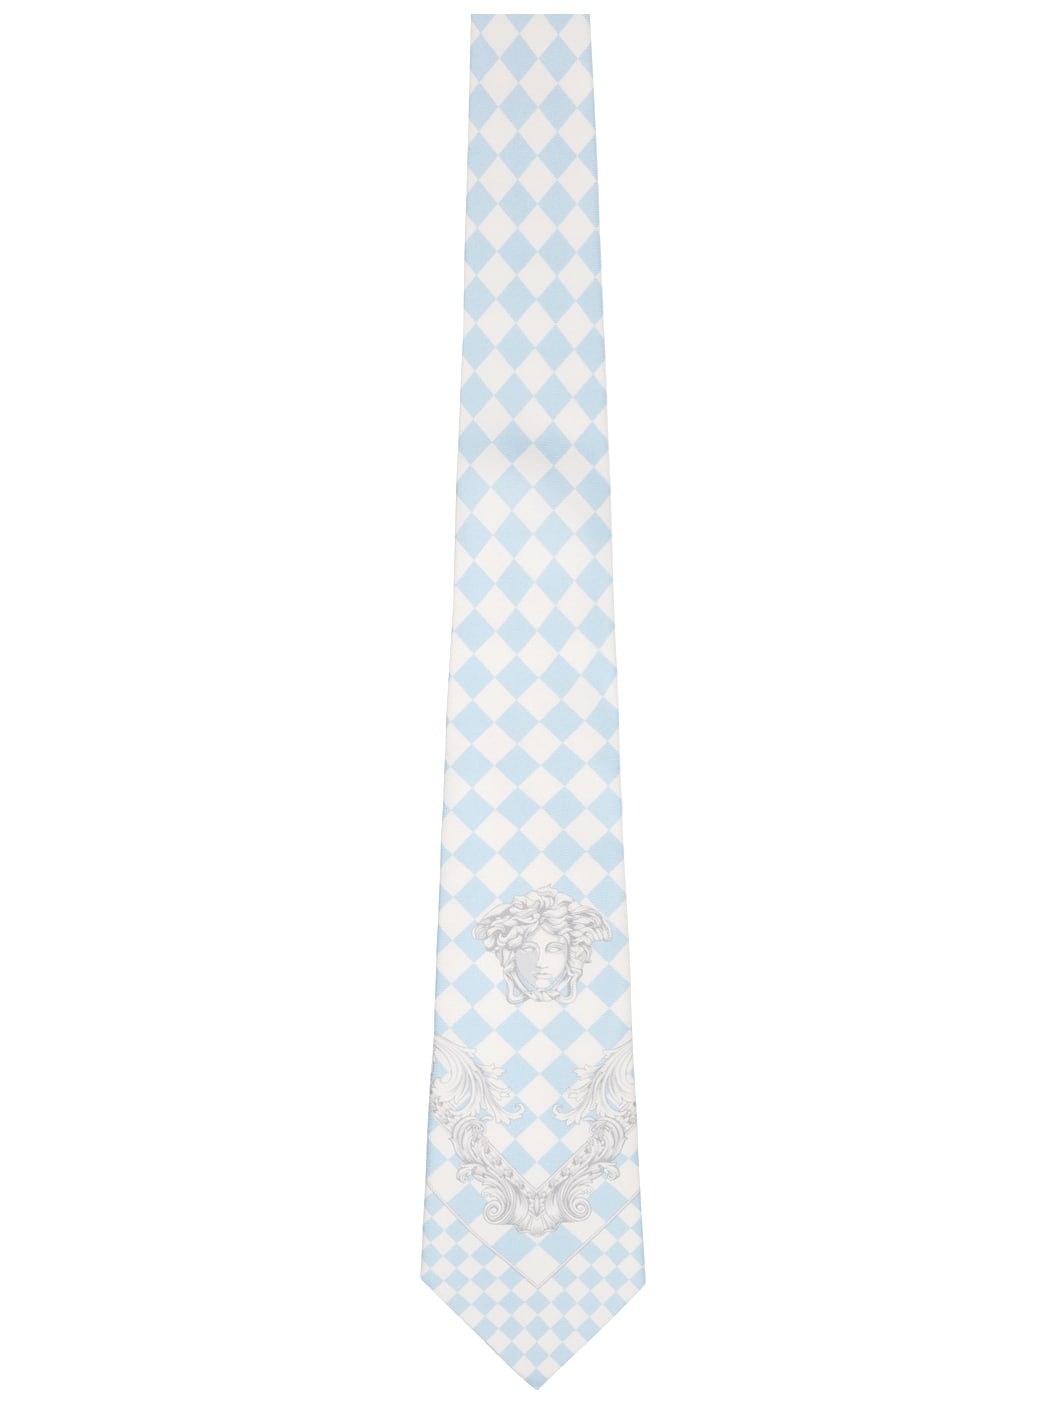 Blue & White Shovel Tie - 1